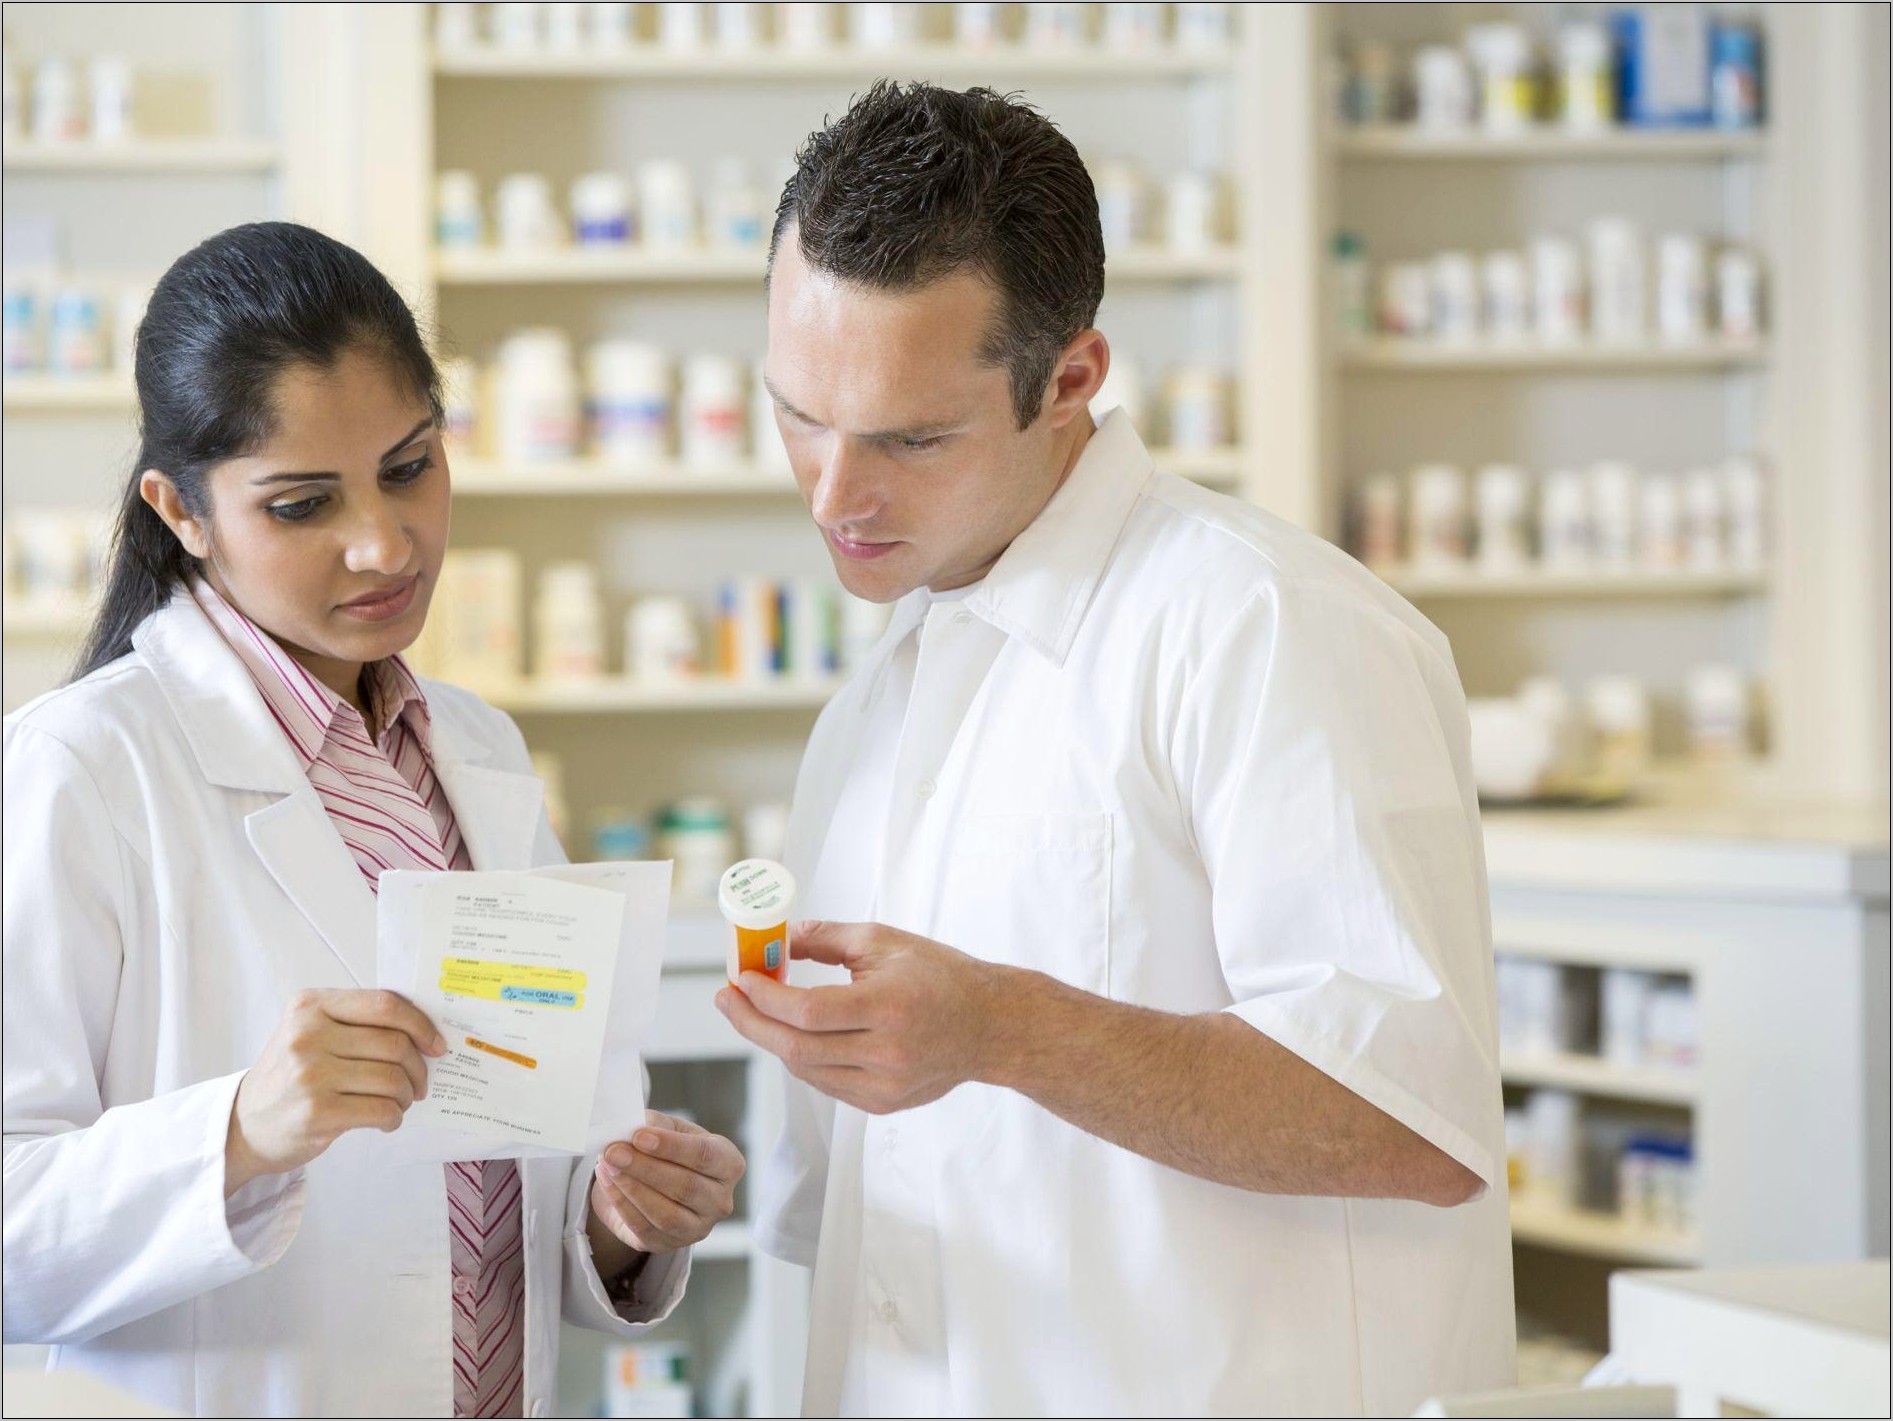 Pharmacy Technician Sample Resume For Retail